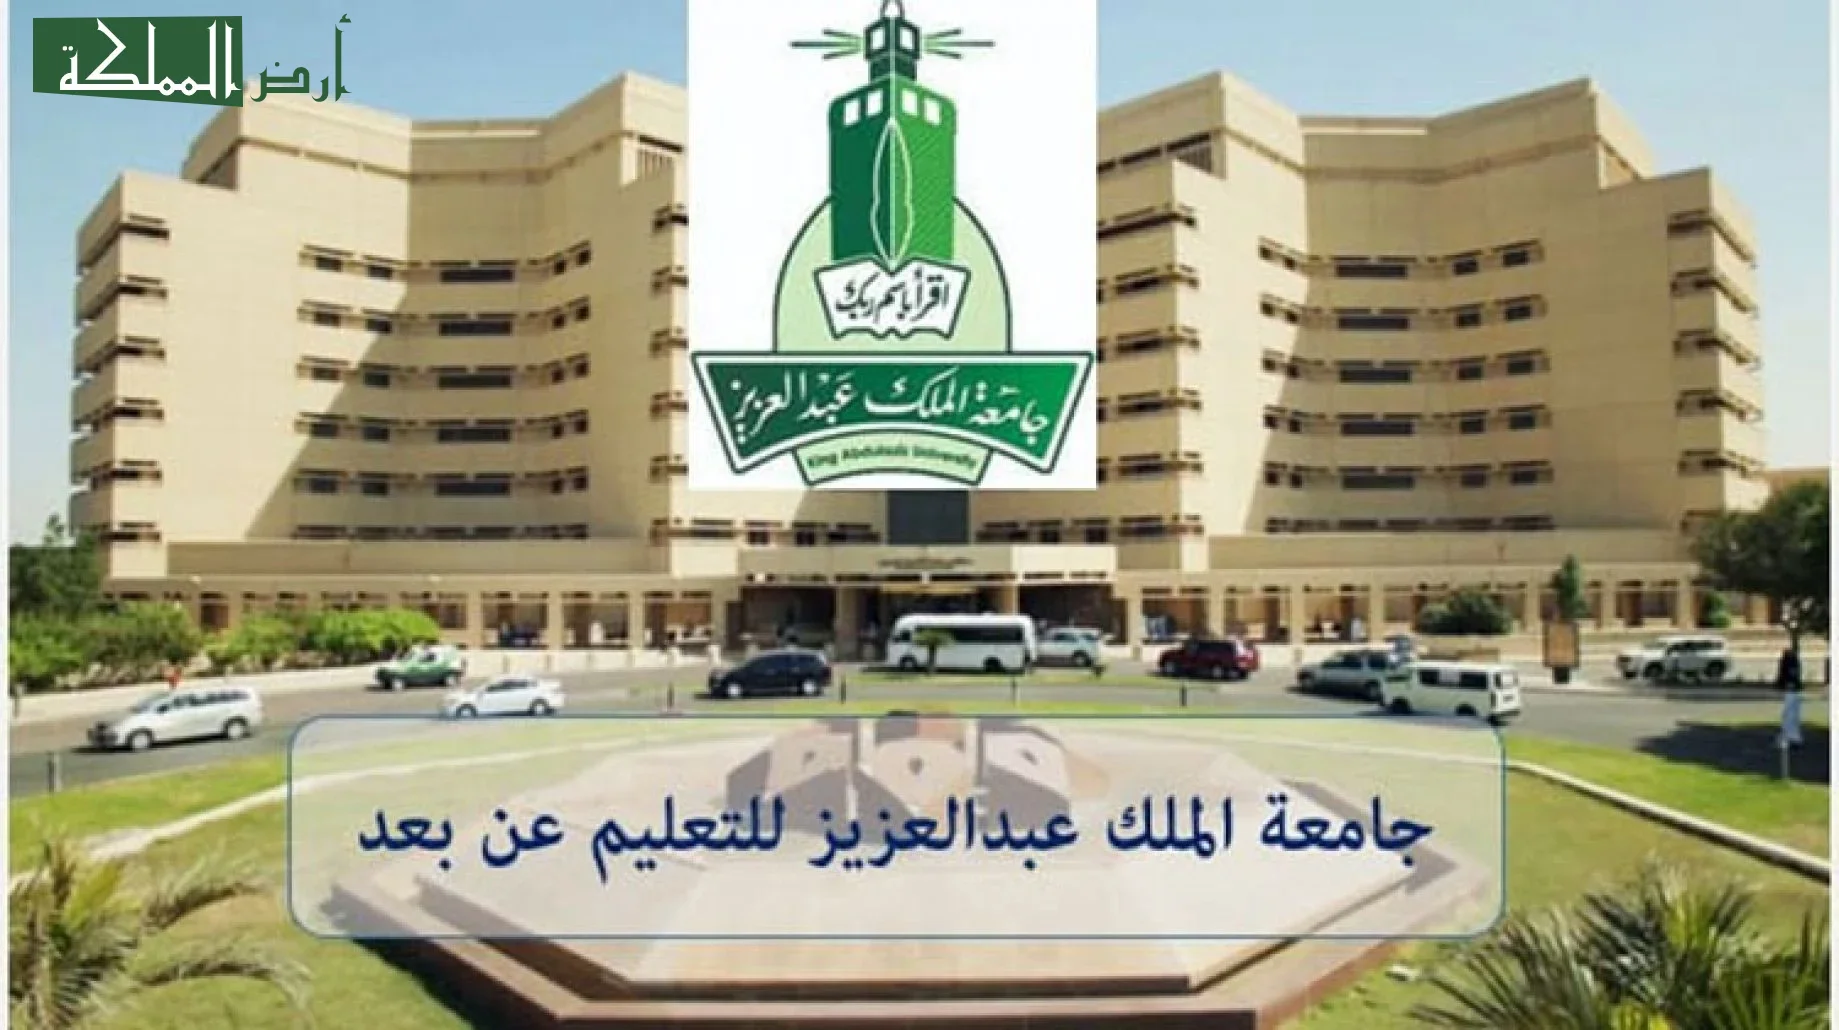 كيفية تسجيل الدخول لجامعة الملك عبدالعزيز بلاك بورد